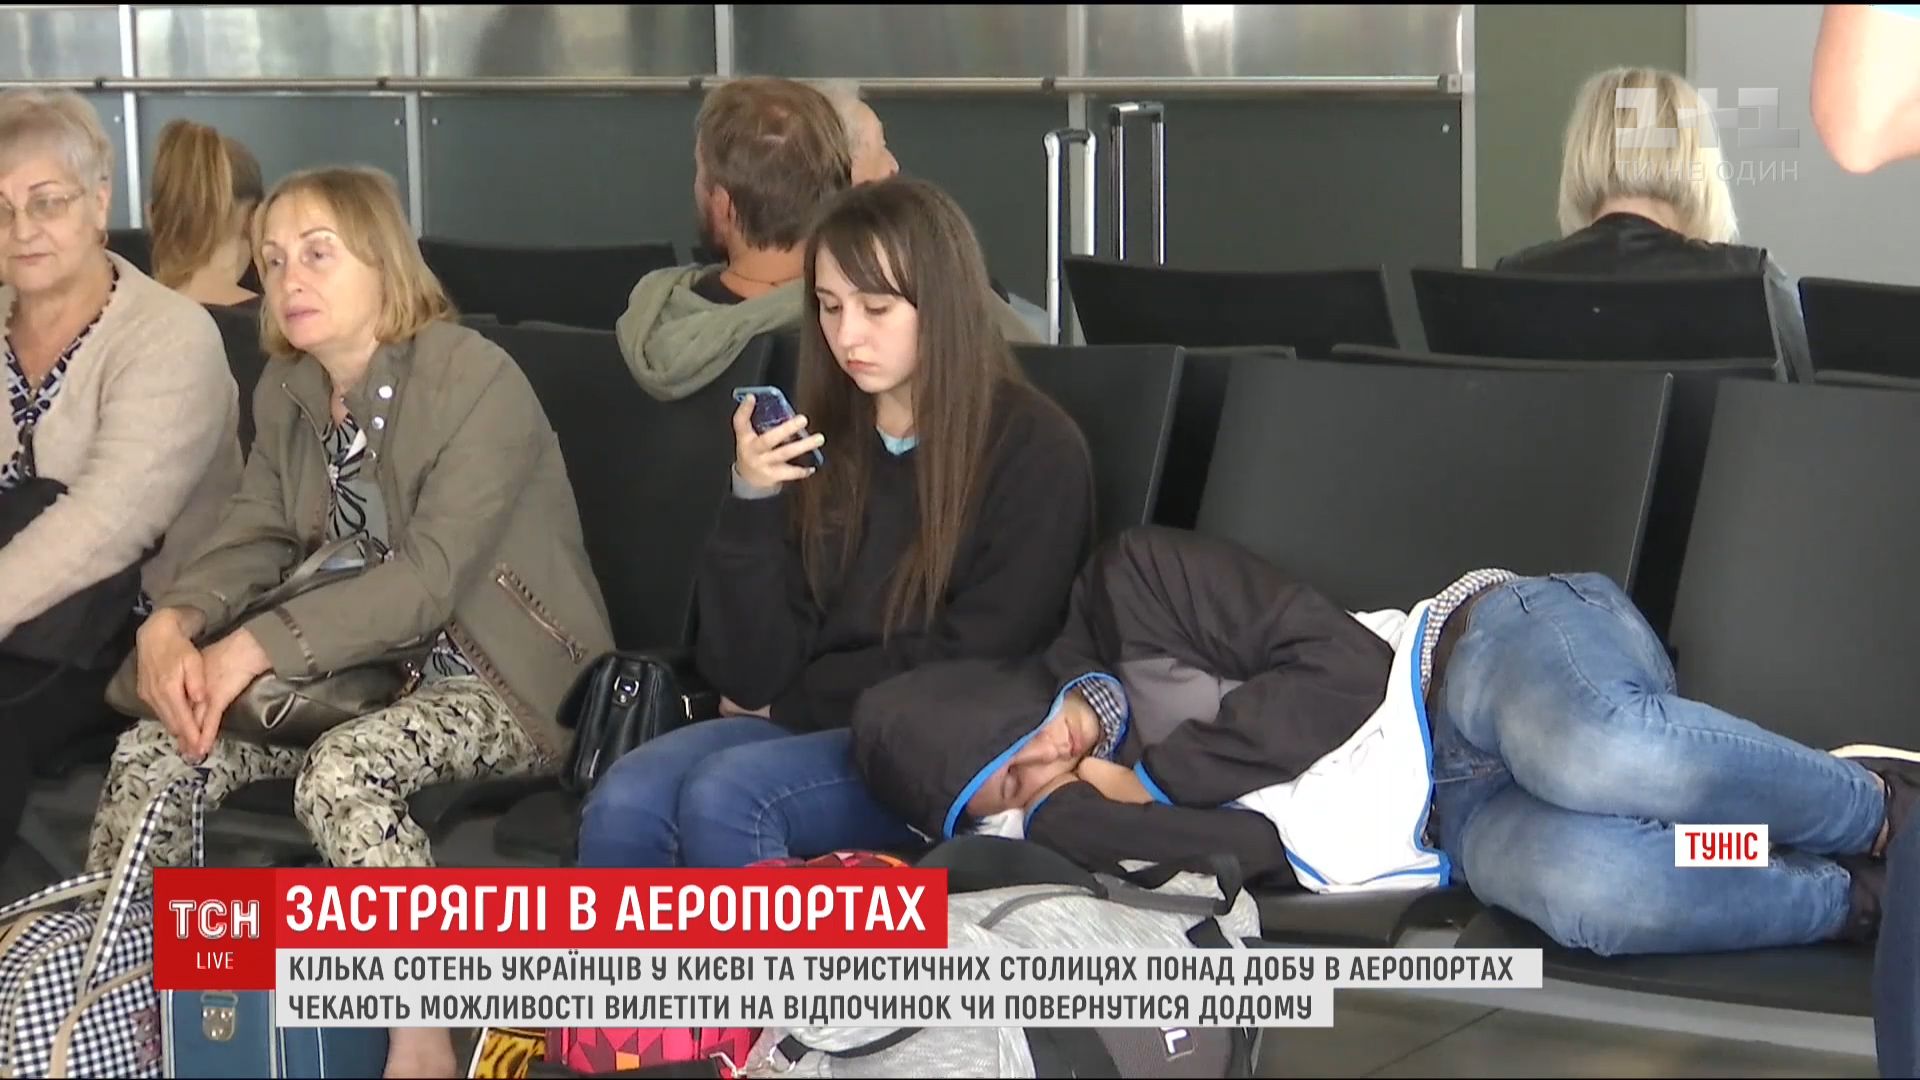 Украинцам пришлось проводить время в аэропортах нескольких стран / Кадр из видео ТСН